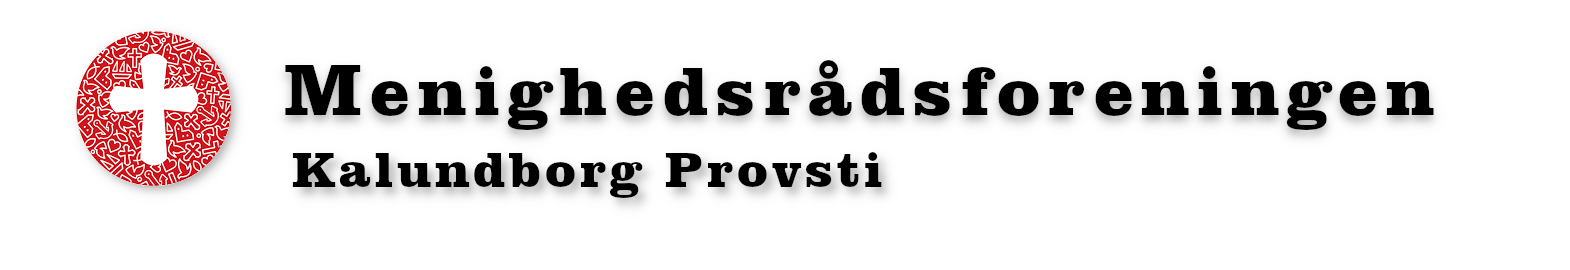 Menighedsrådsforeningen Kalundborg Provsti